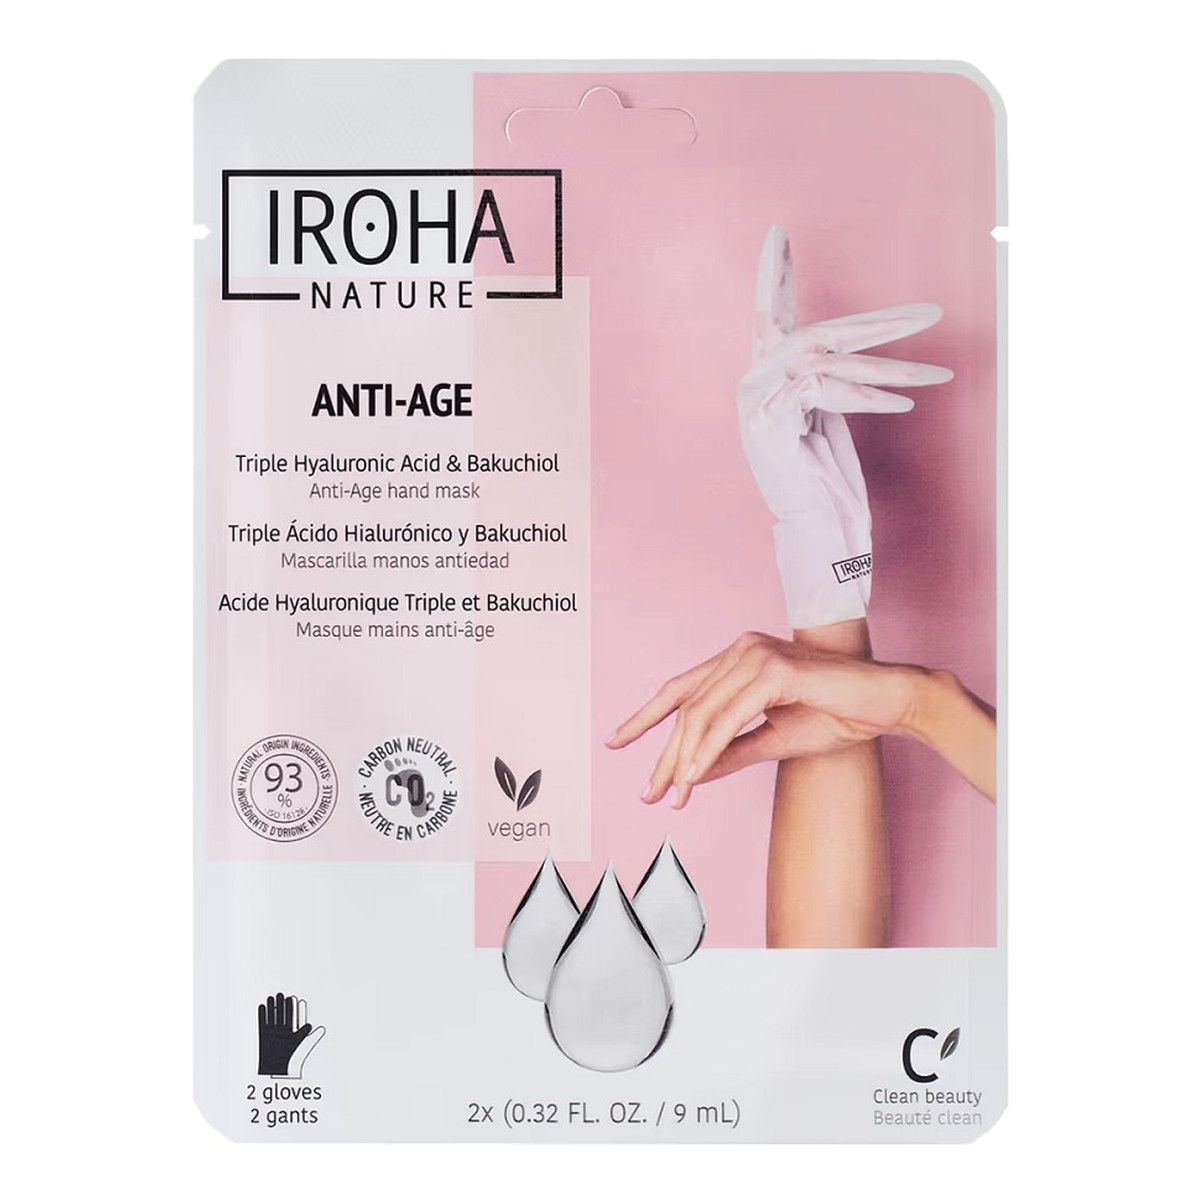 Iroha Nature Anti-Age Hand Mask przeciwstarzeniowa maska do rąk w formie rękawic Triple Hyaluronic Acid & Bakuchiol 2x9ml 18